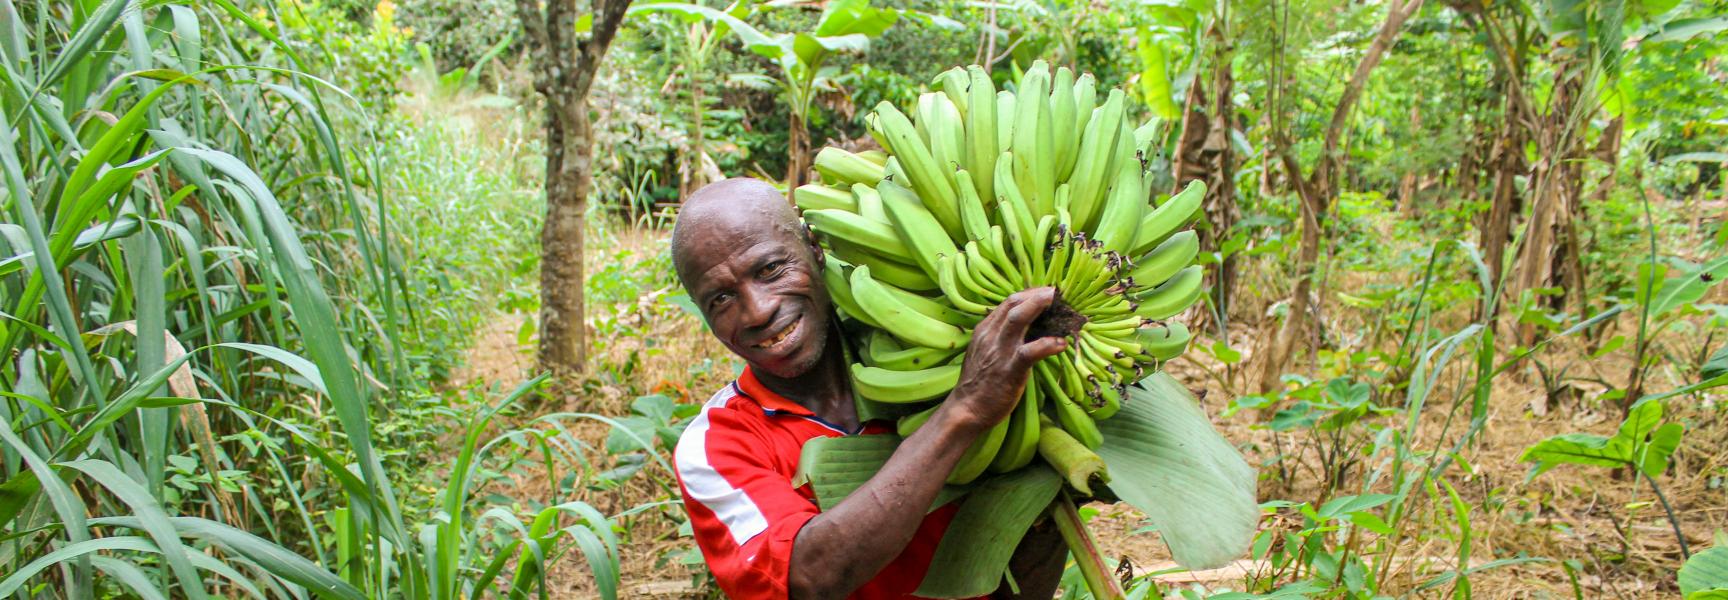 Hombre recolectando bananas en Ghana